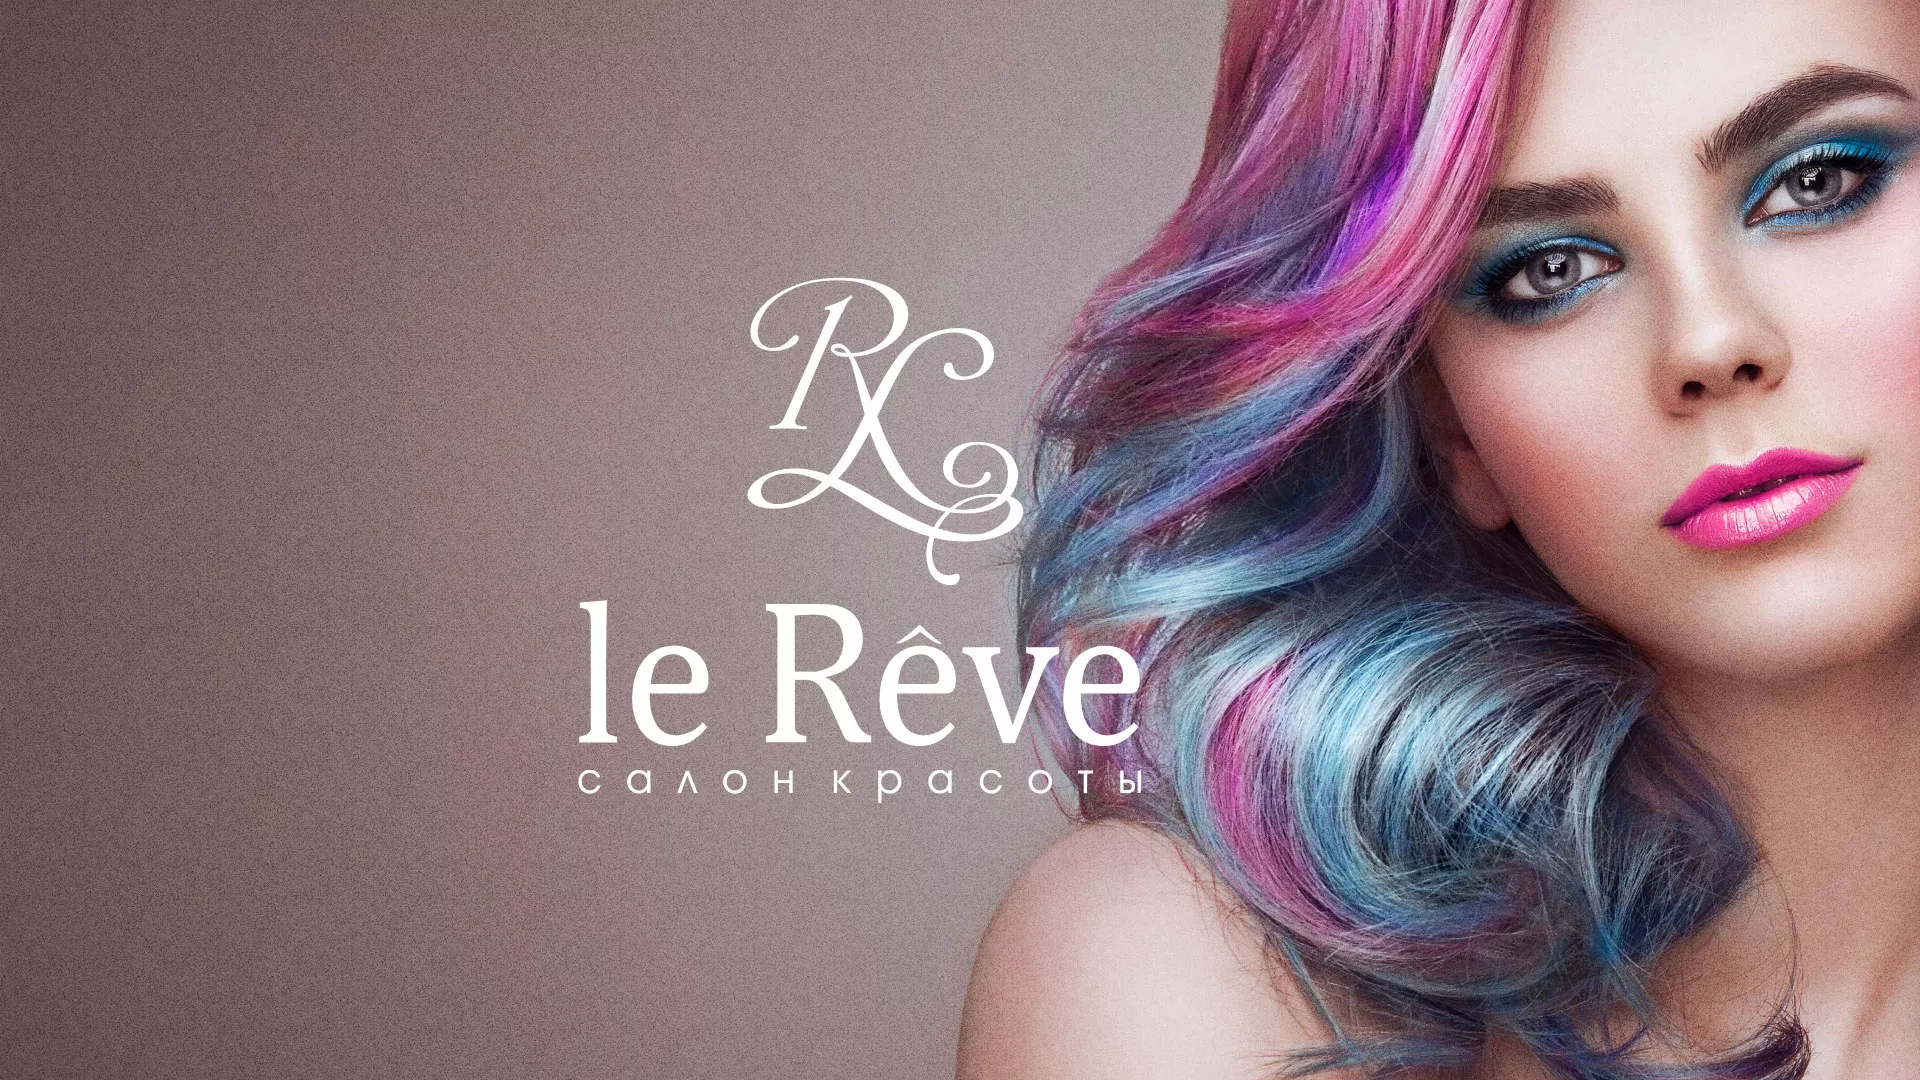 Создание сайта для салона красоты «Le Reve» в Калязине